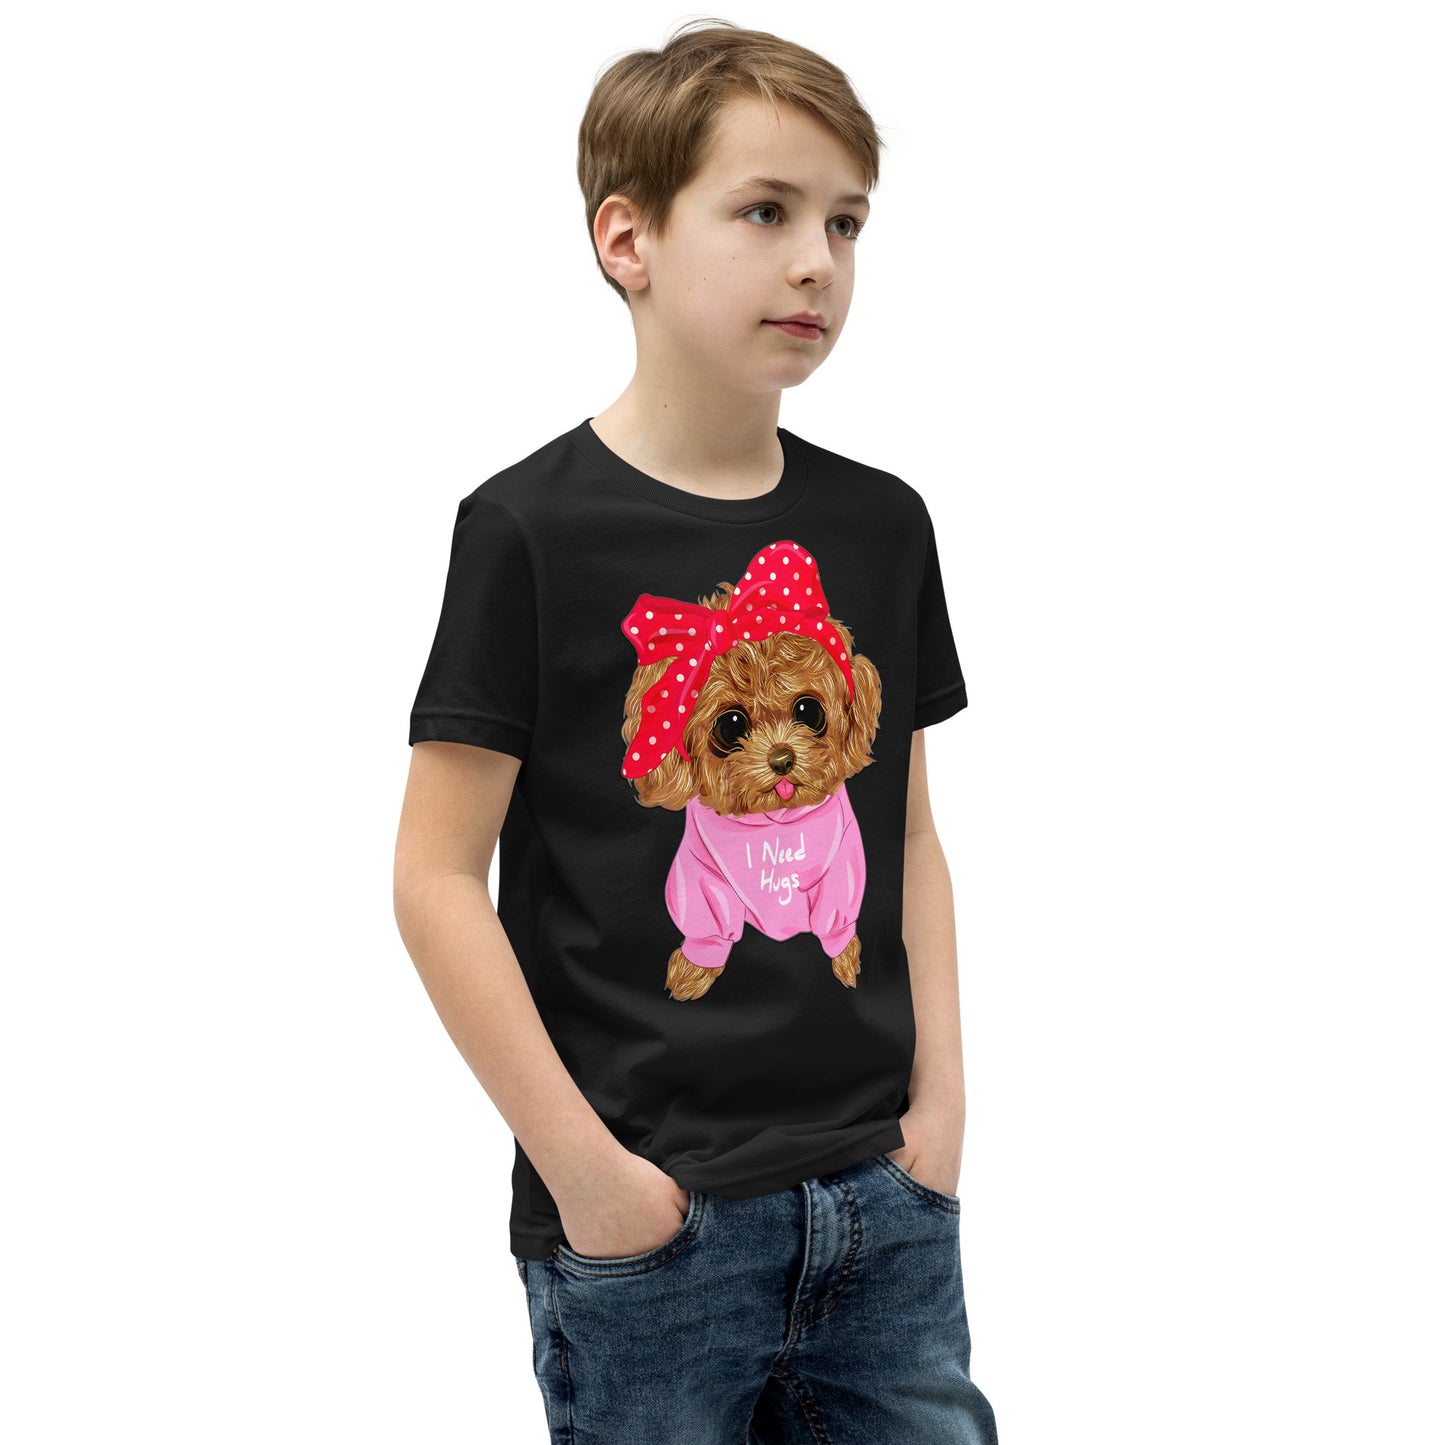 Cute Dog Puppy Needs a Hug T-shirt, No. 0296